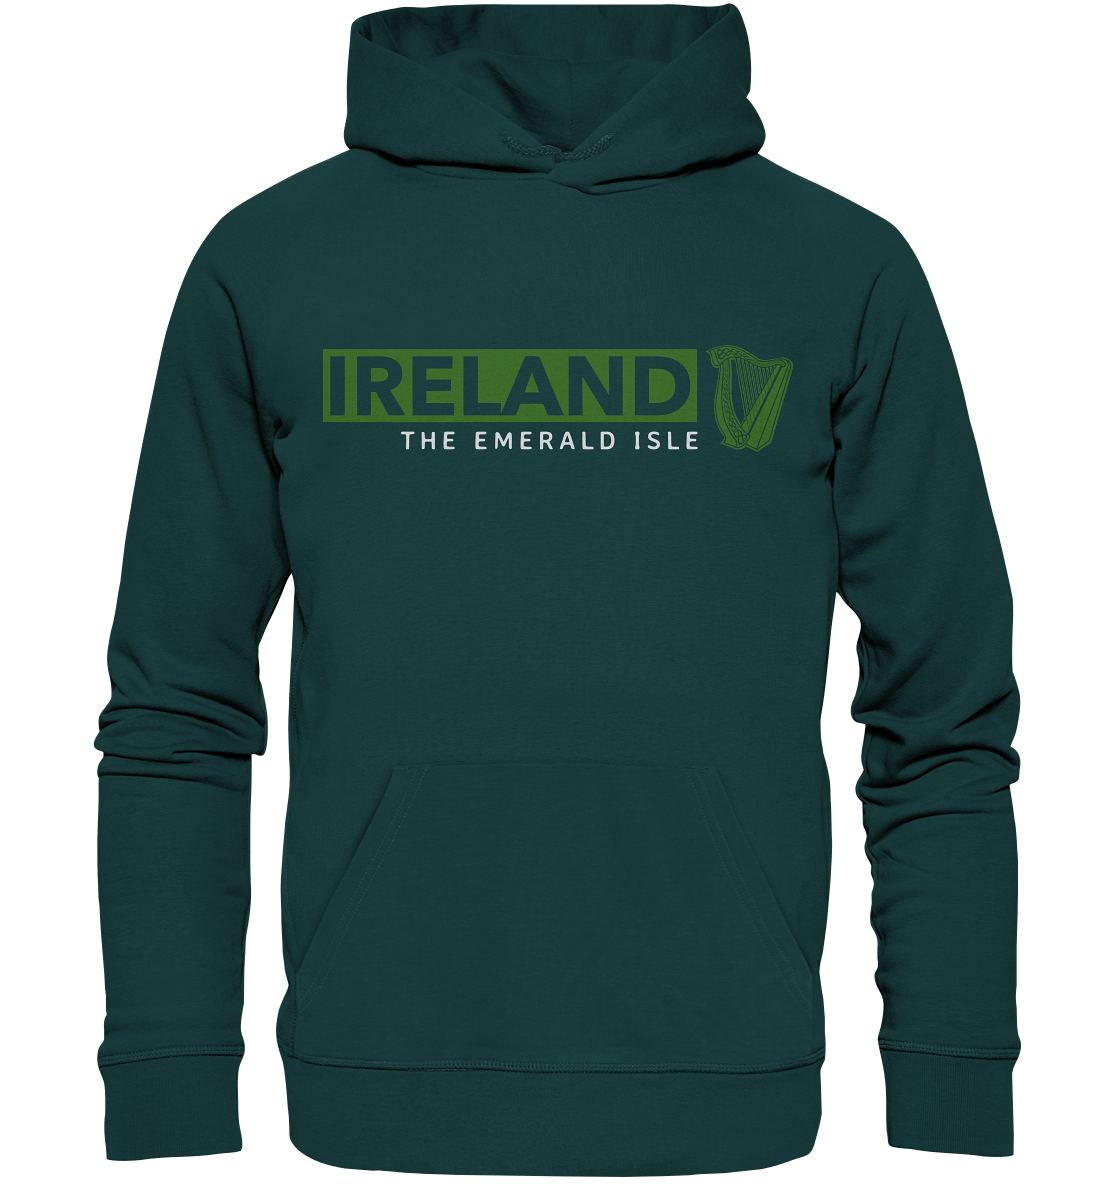 Ireland "The Emerald Isle / Harp" - Organic Hoodie